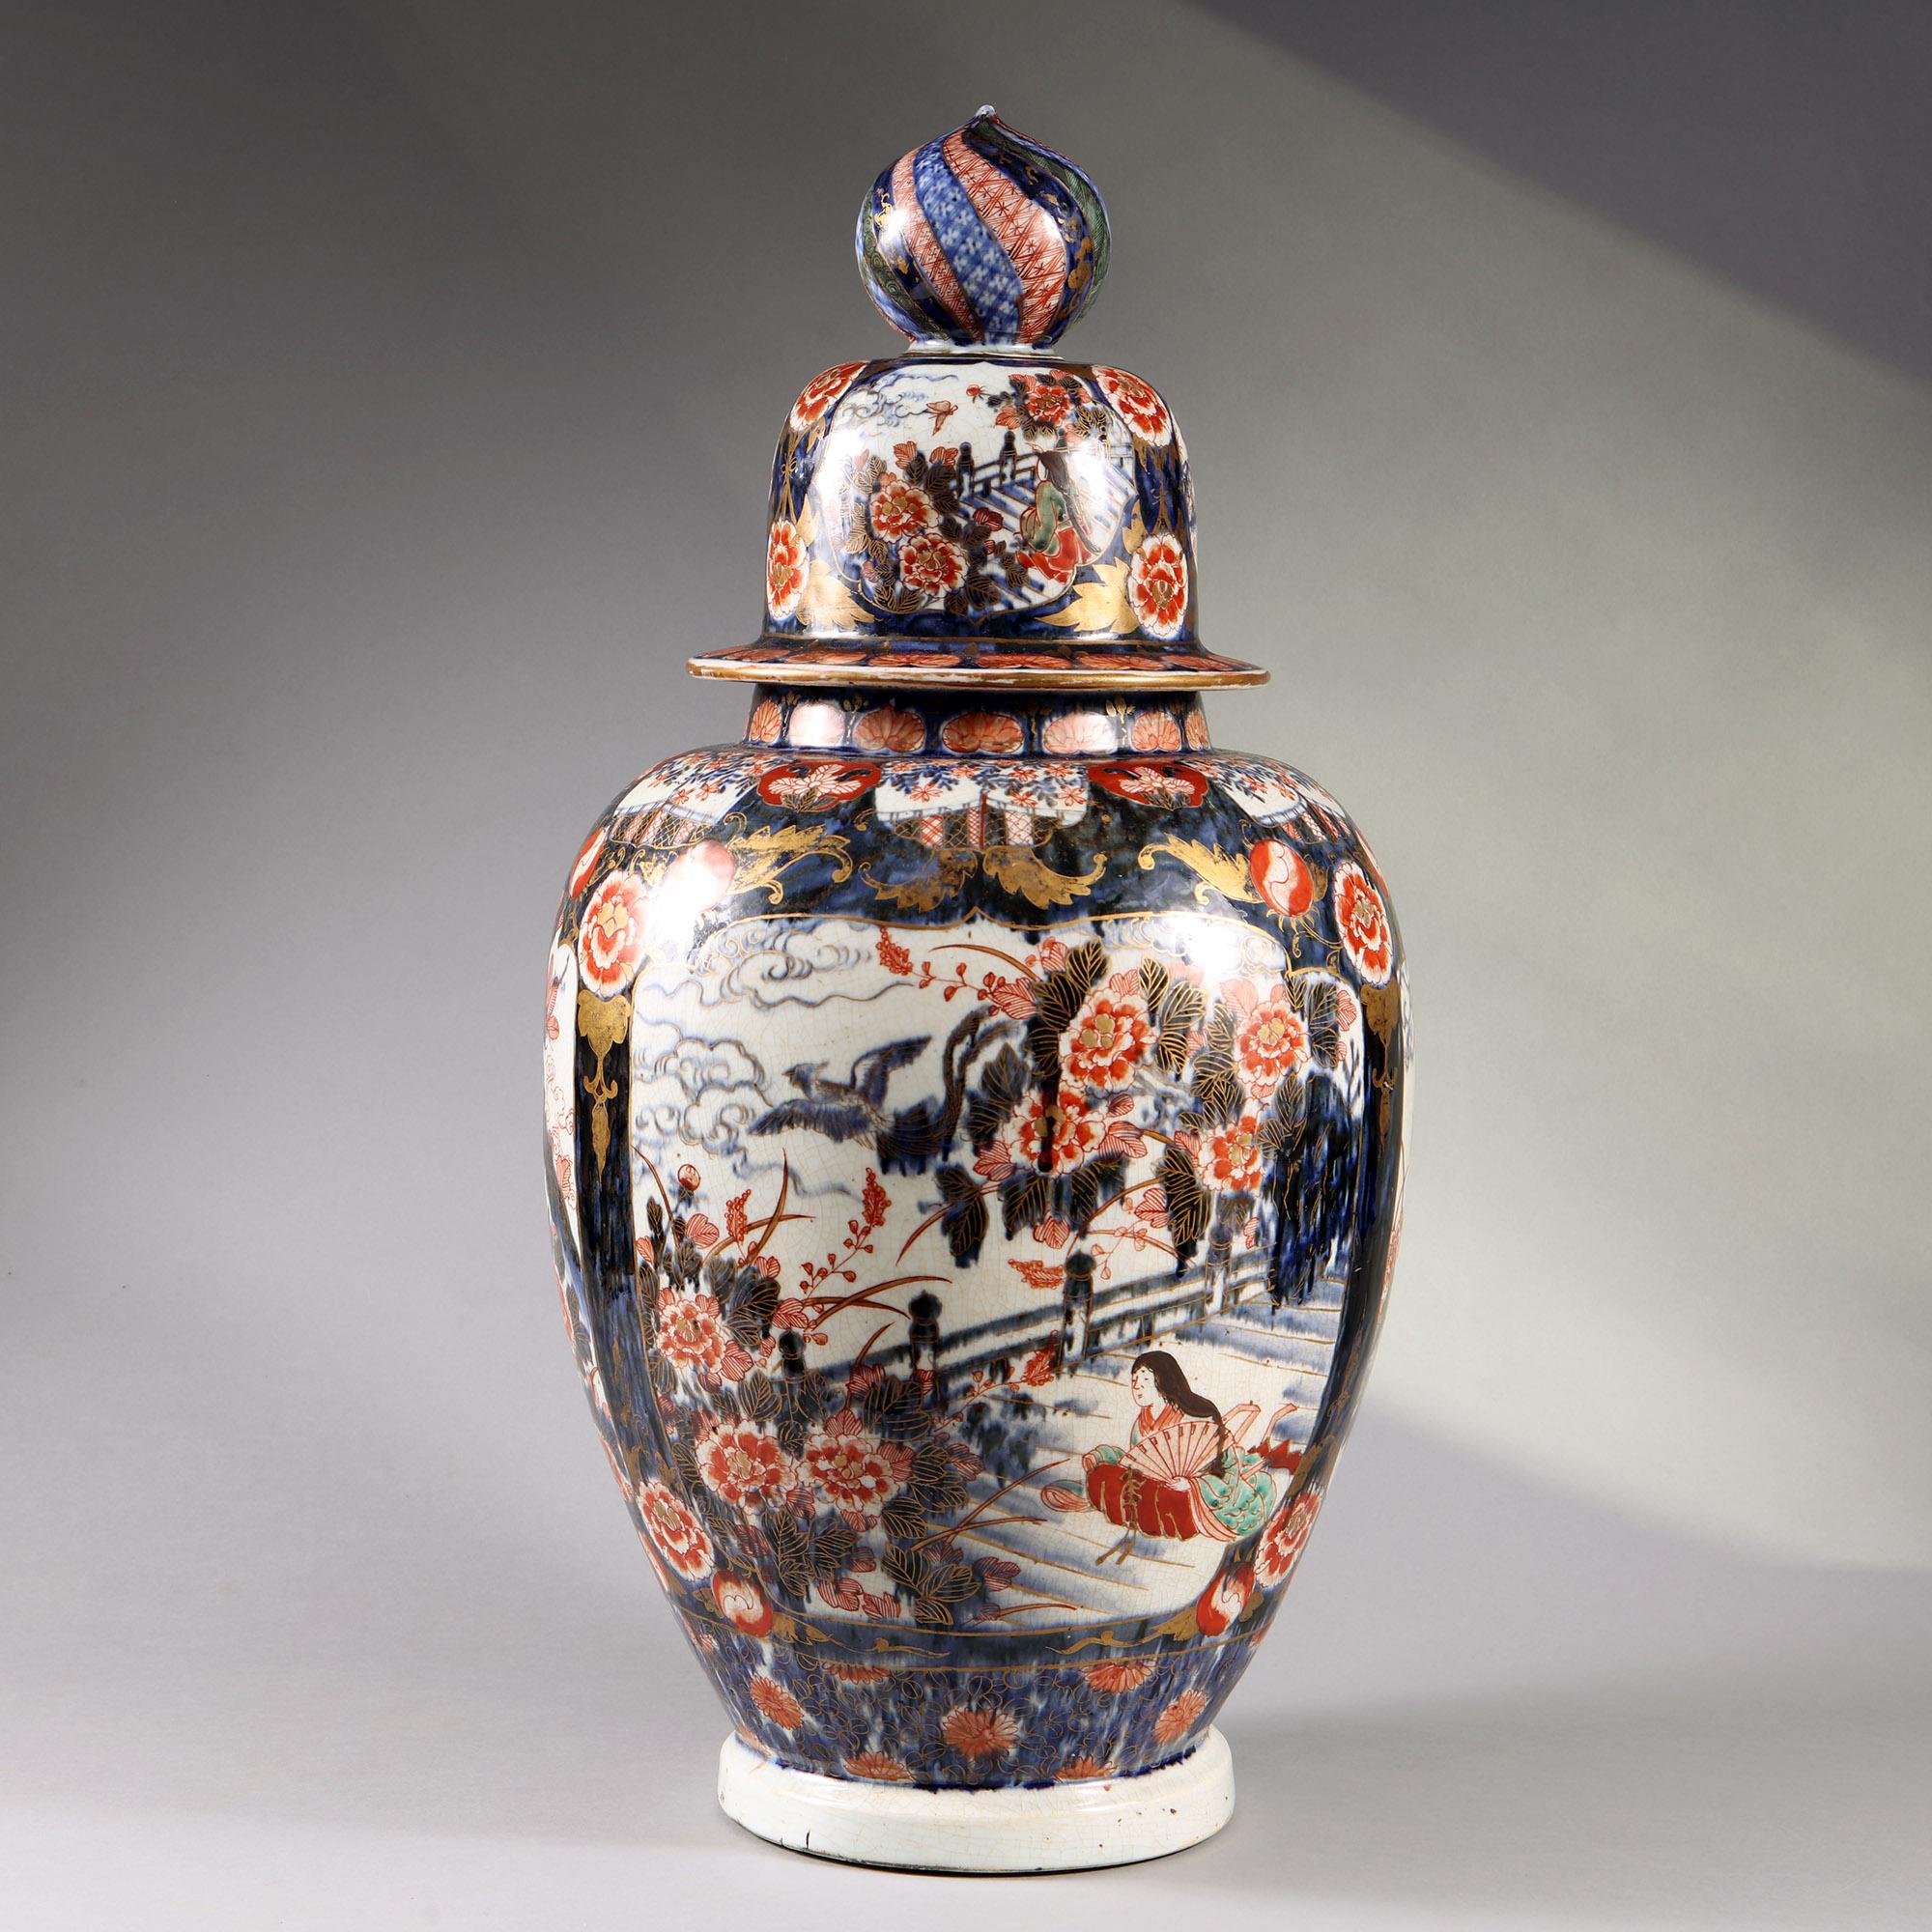 Vase et couvercle Imari japonais inhabituels, probablement destinés au marché turc.  Très lourd. 

Hauteur 62cm 
Diamètre 31  